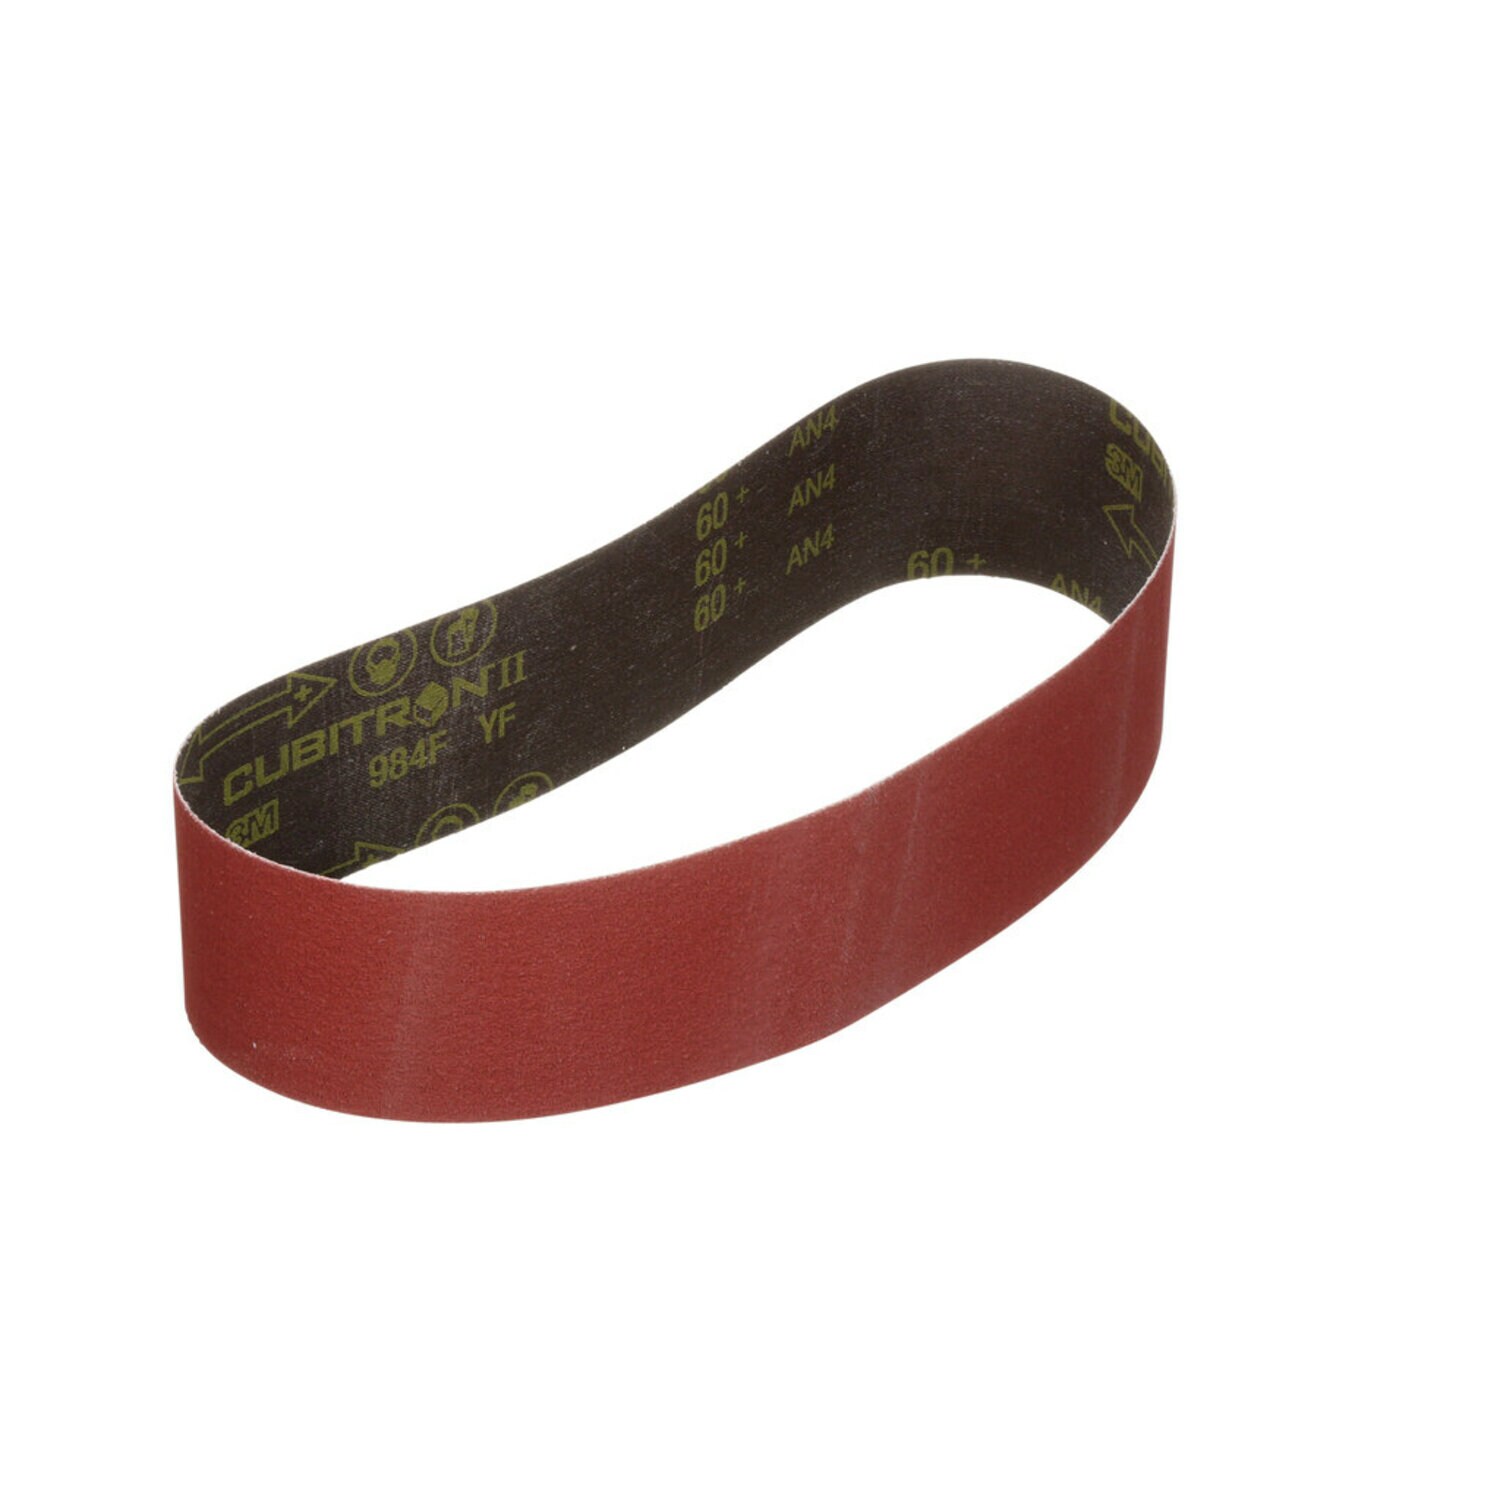 7010515299 - 3M Cubitron II Cloth Belt 984F, 60+ YF-weight, 1/2 in x 24 in,
Fabri-lok, Single-flex, Scallop A